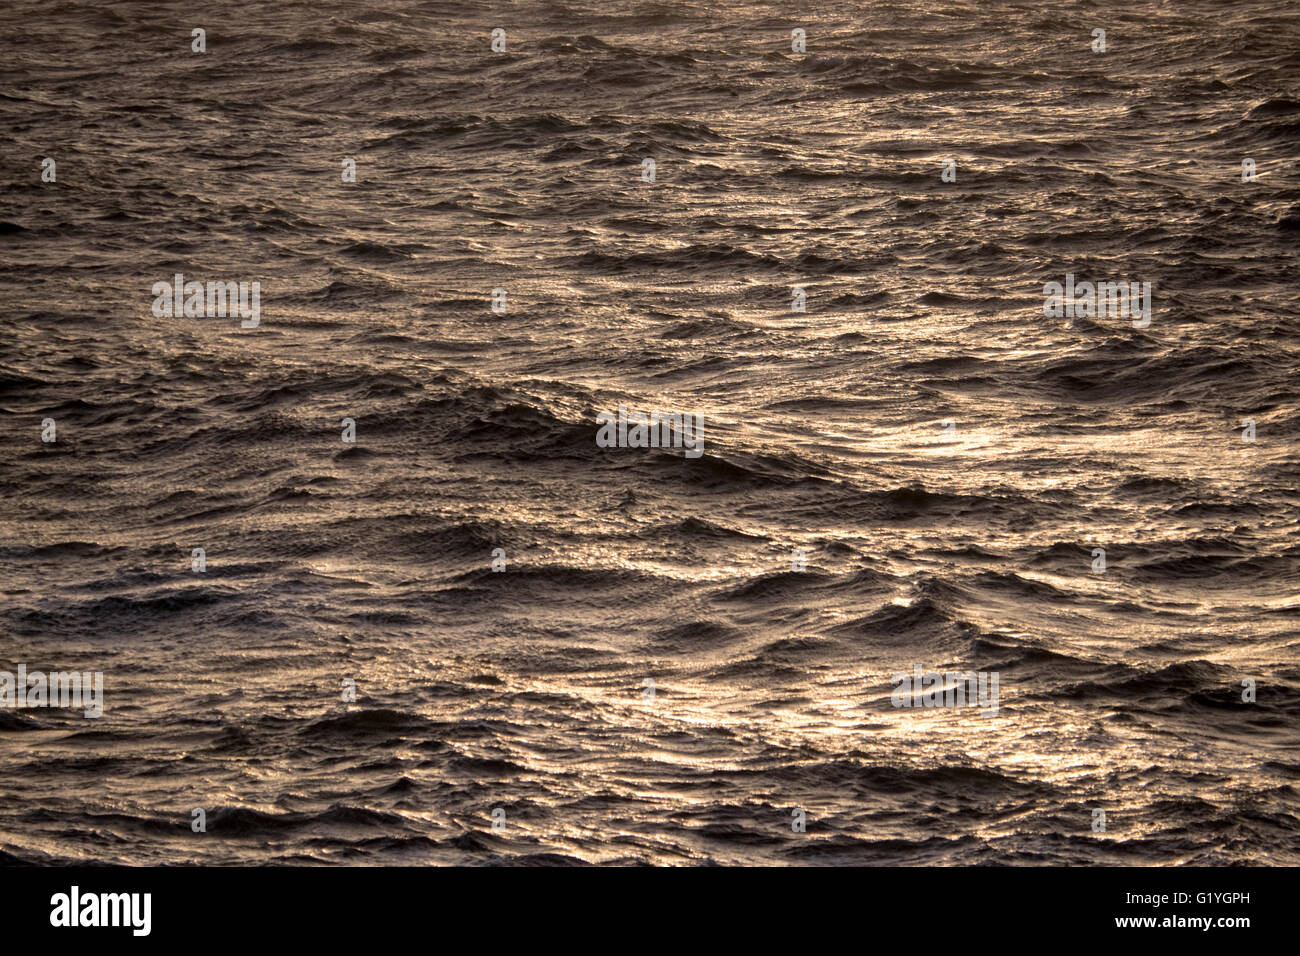 L'Atlantico al largo delle coste del Marocco Foto Stock